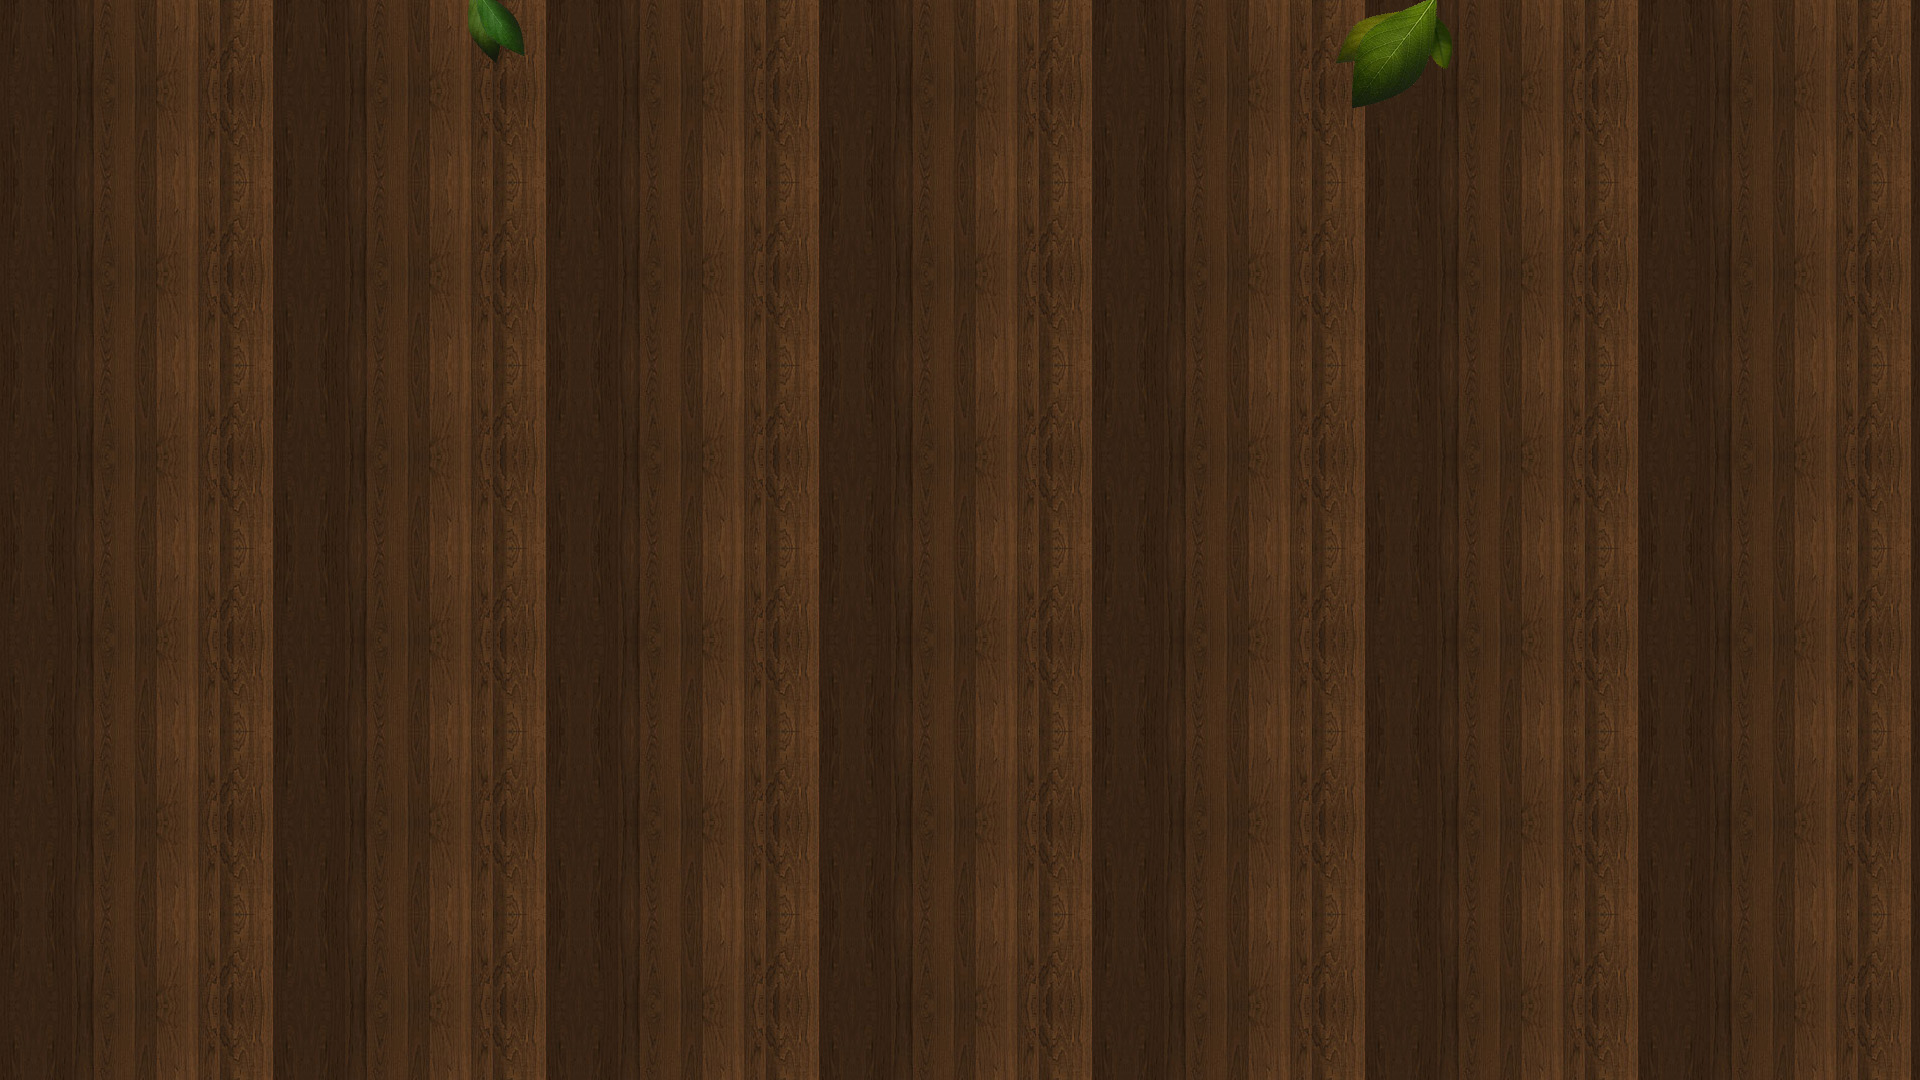 Quiet night brown wood floor desktop wallpaper